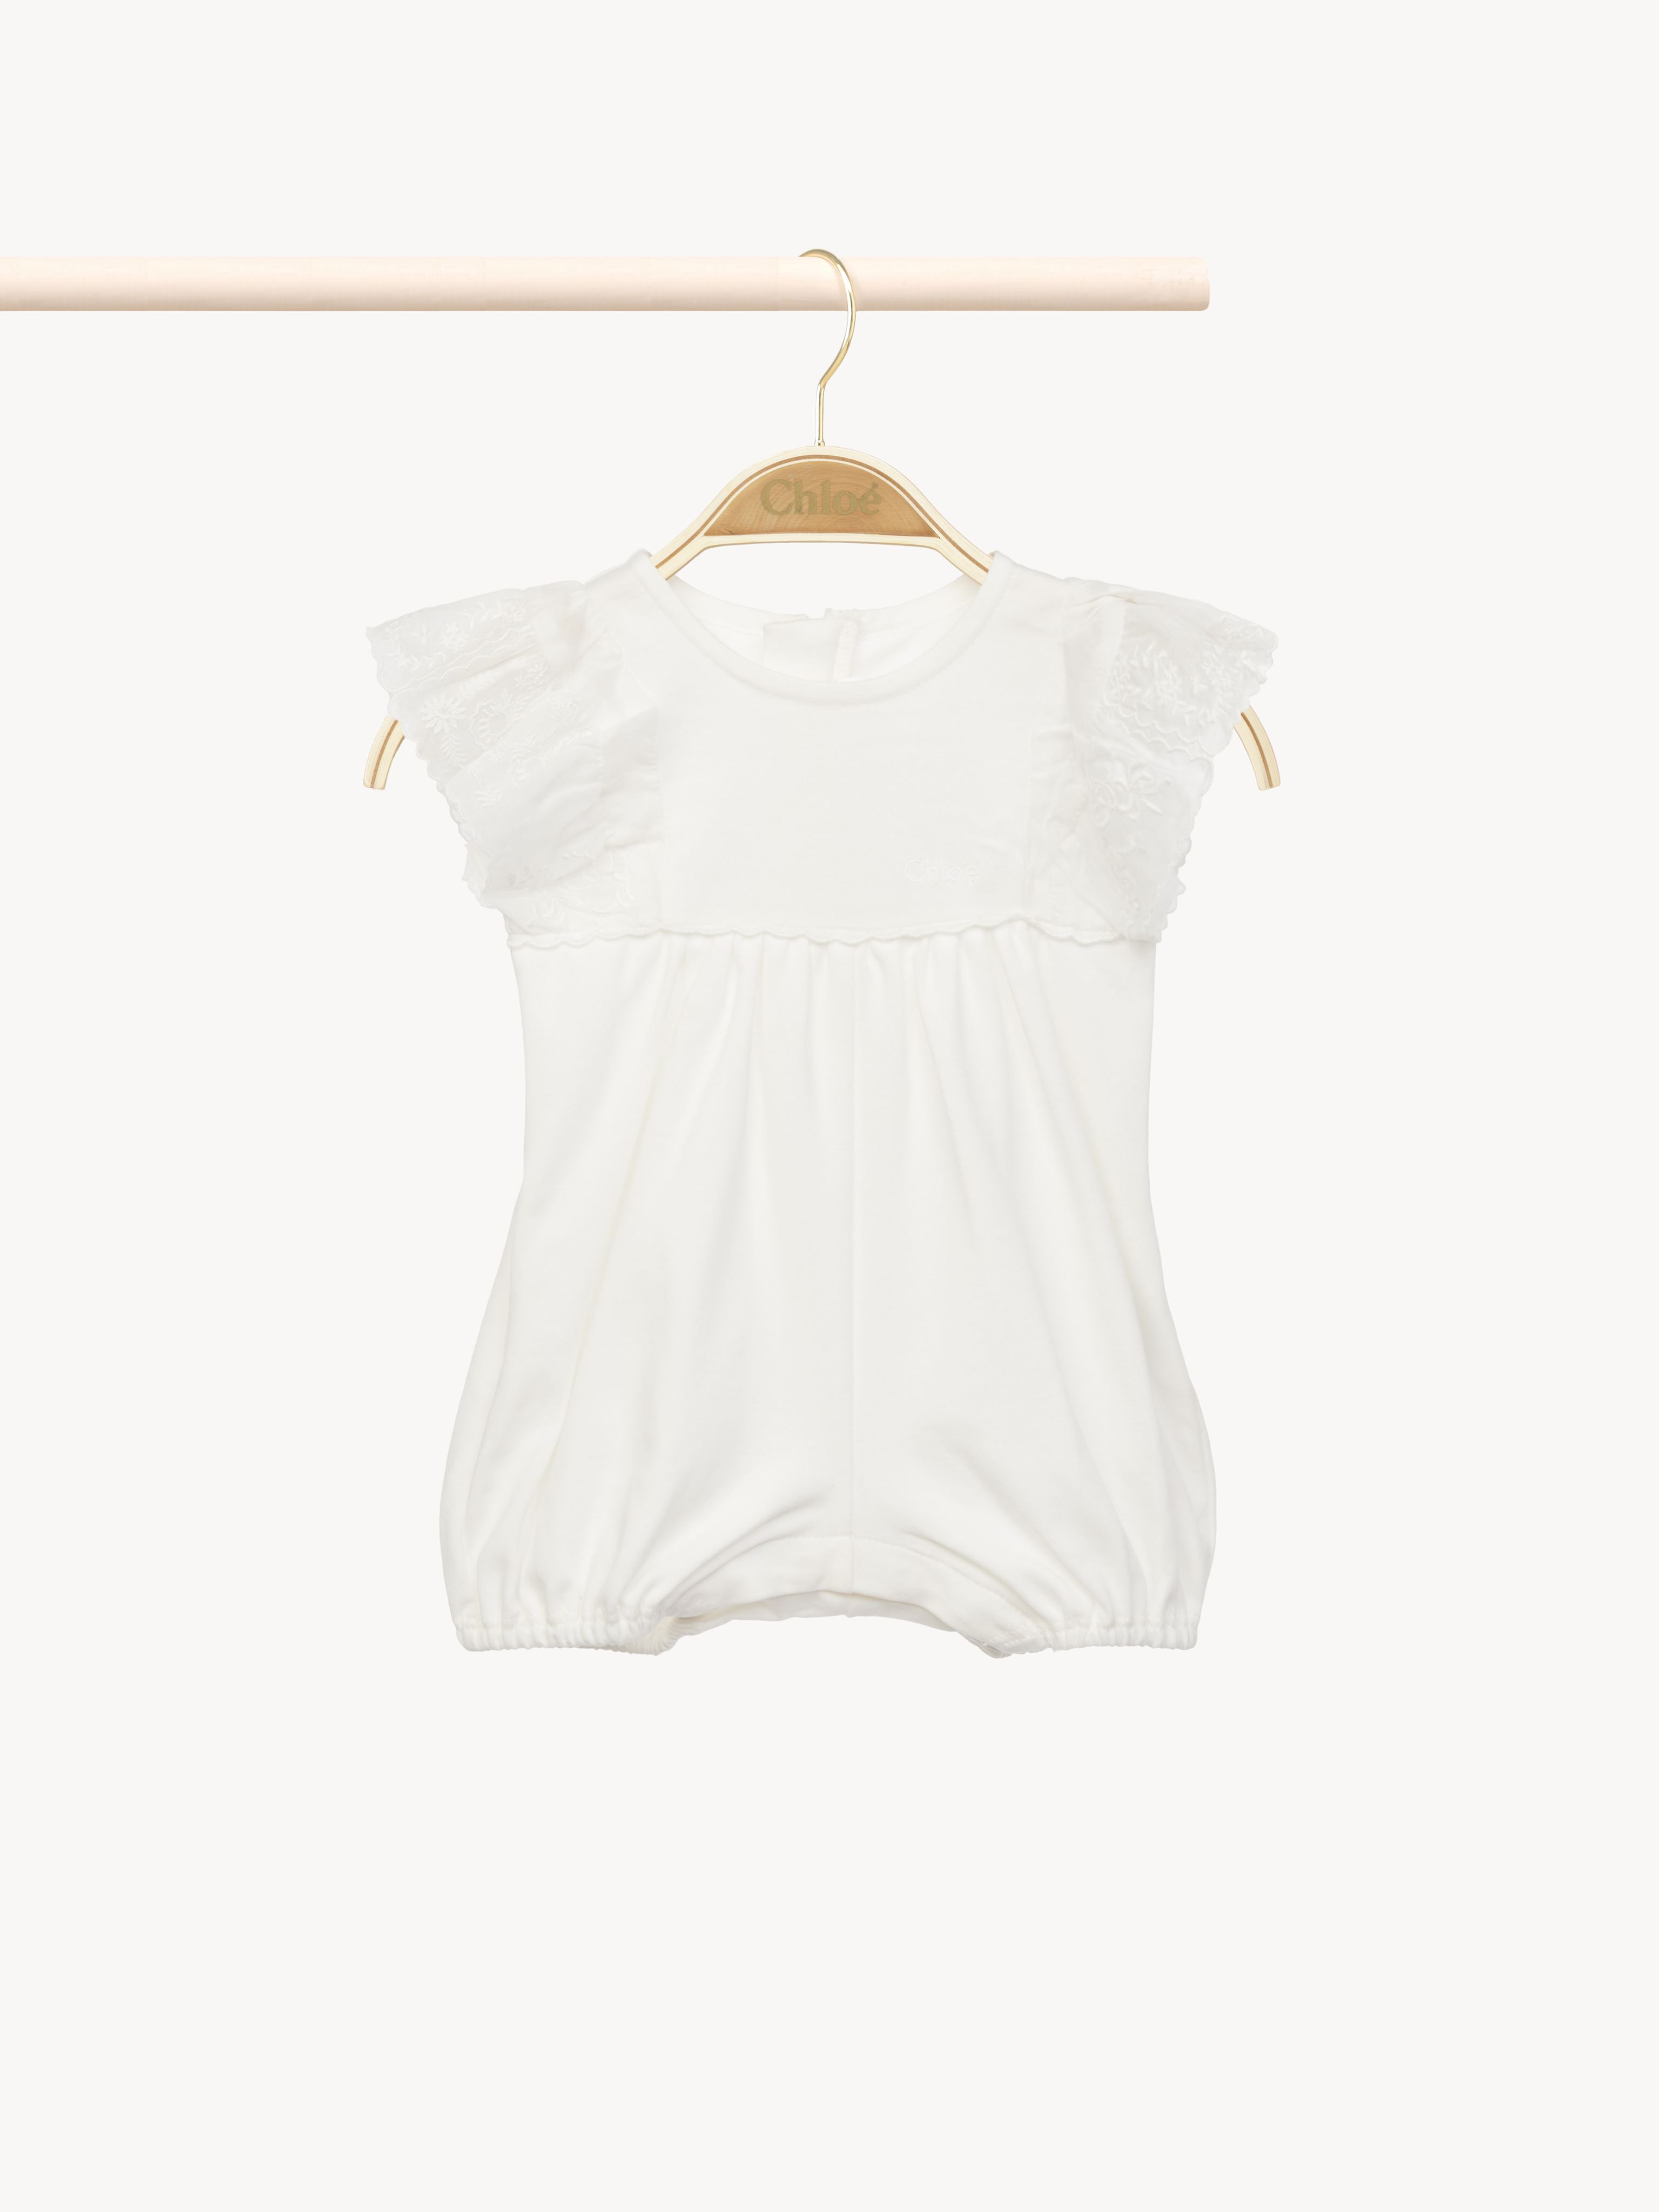 Chloé Kids' Short Jumpsuit White Size 3-6 100% Cotton